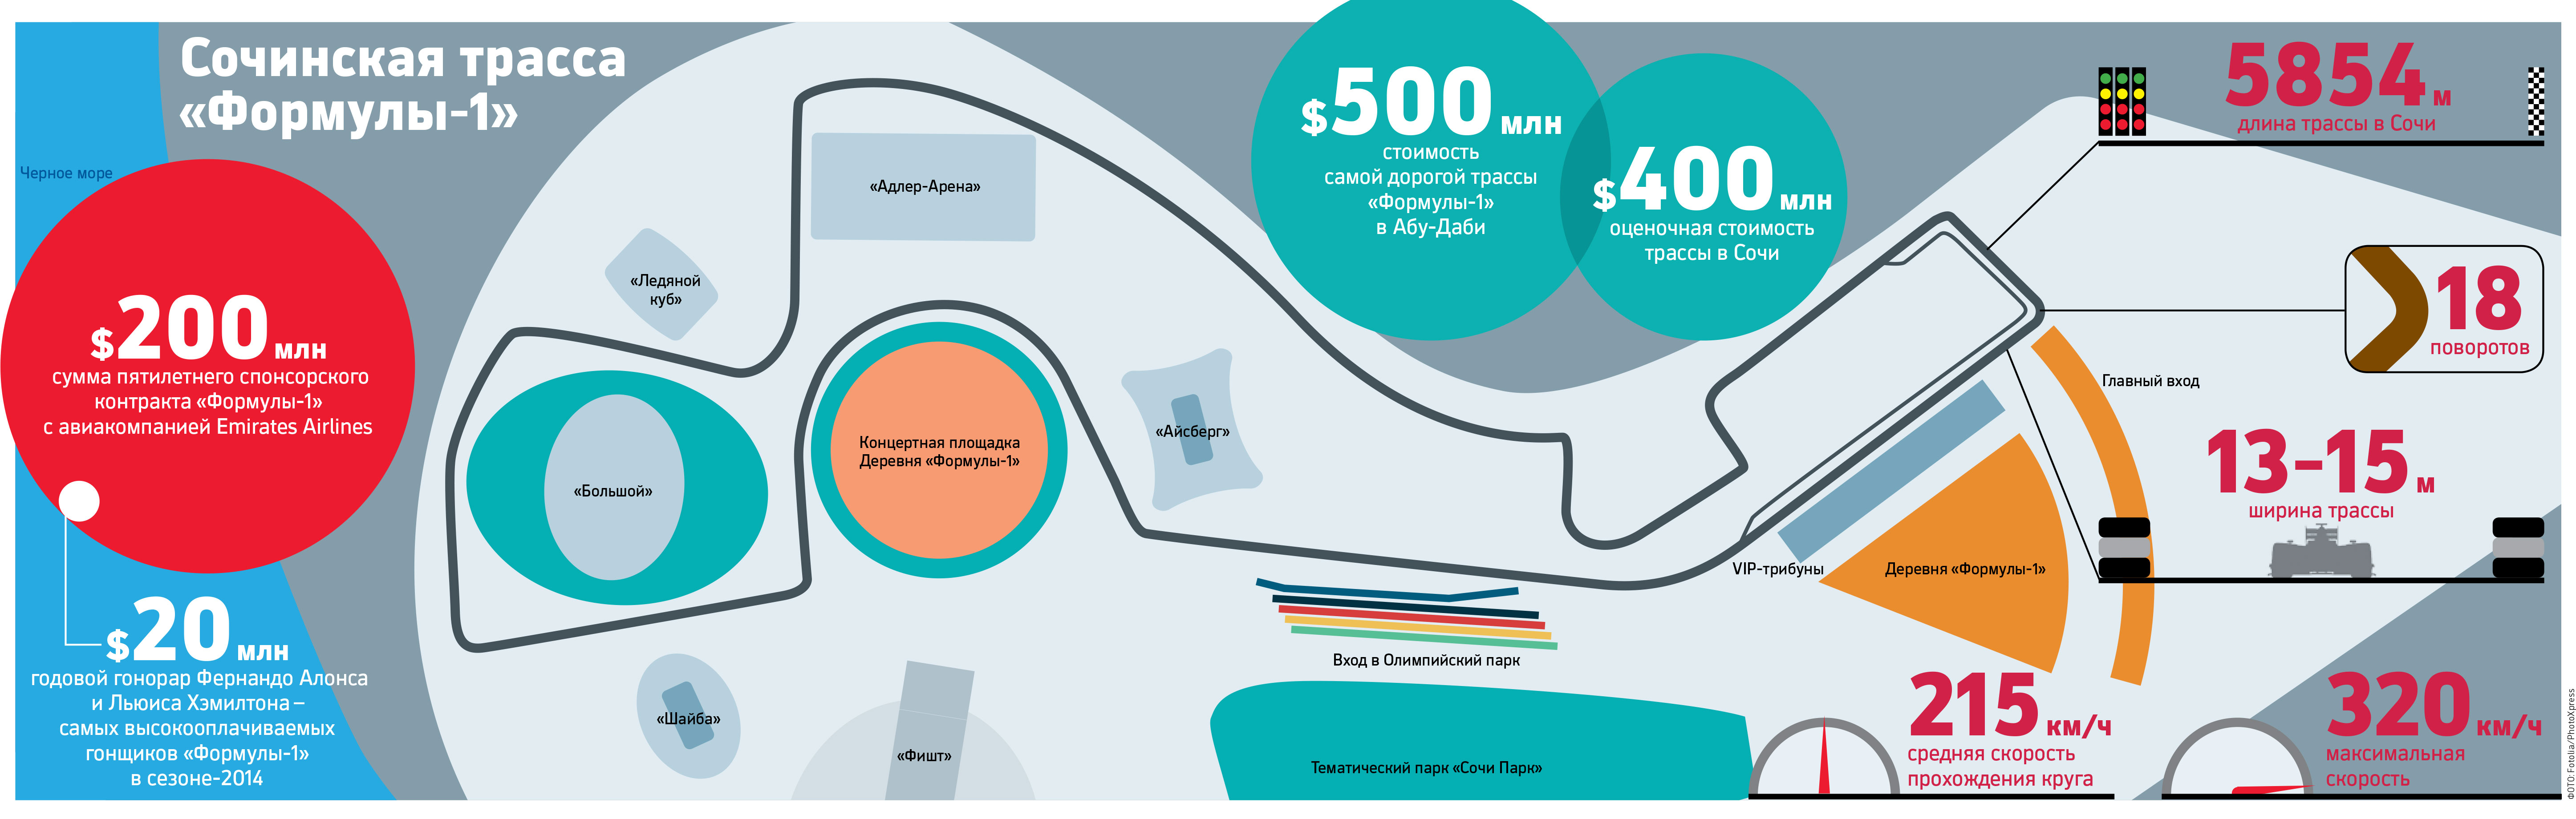 Трасса Moscow Raceway получила лицензию на организацию гонок «Формулы-1»